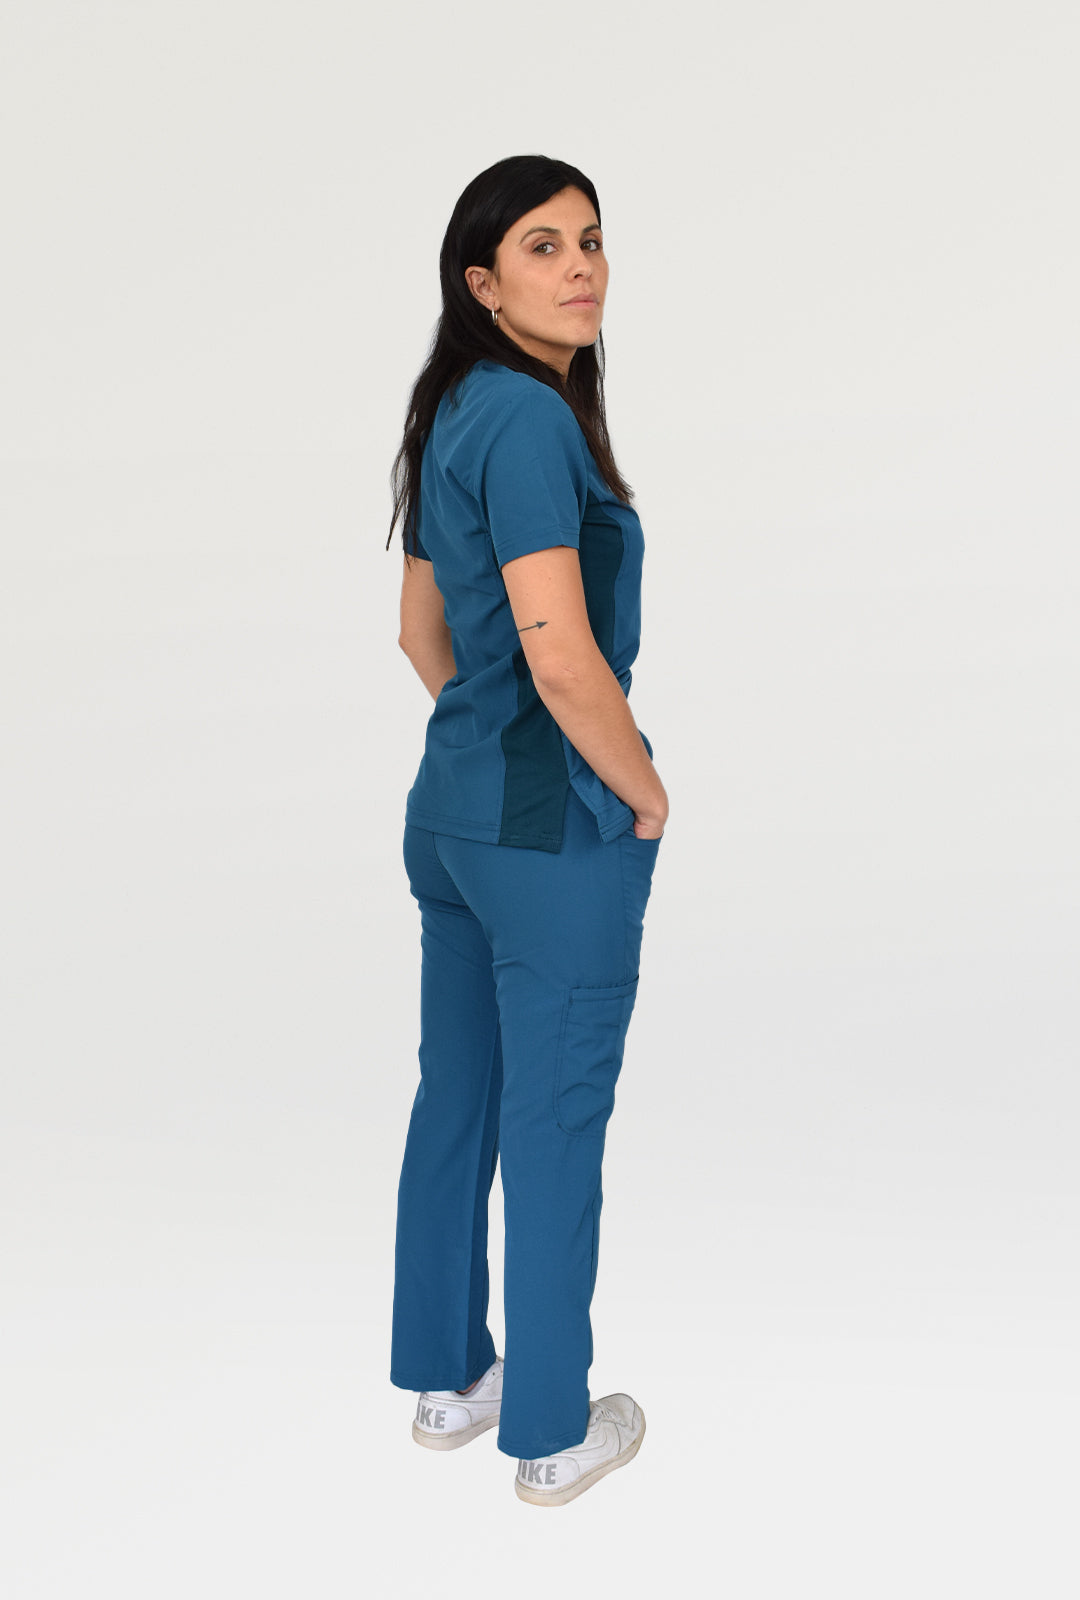 uniforme clínicos de mujer en color turquesa